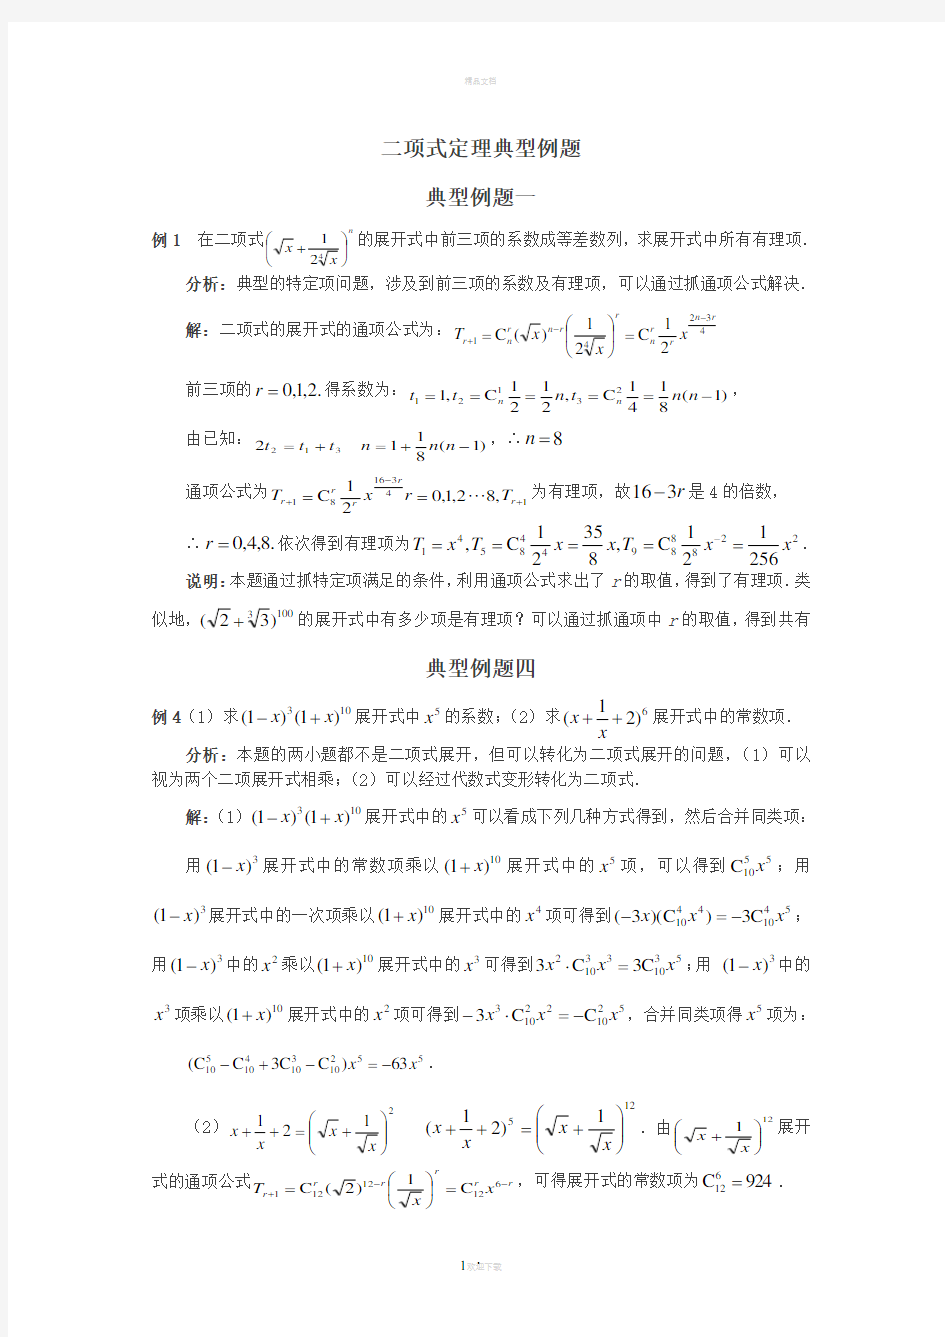 二项式定理典型例题(含解答)